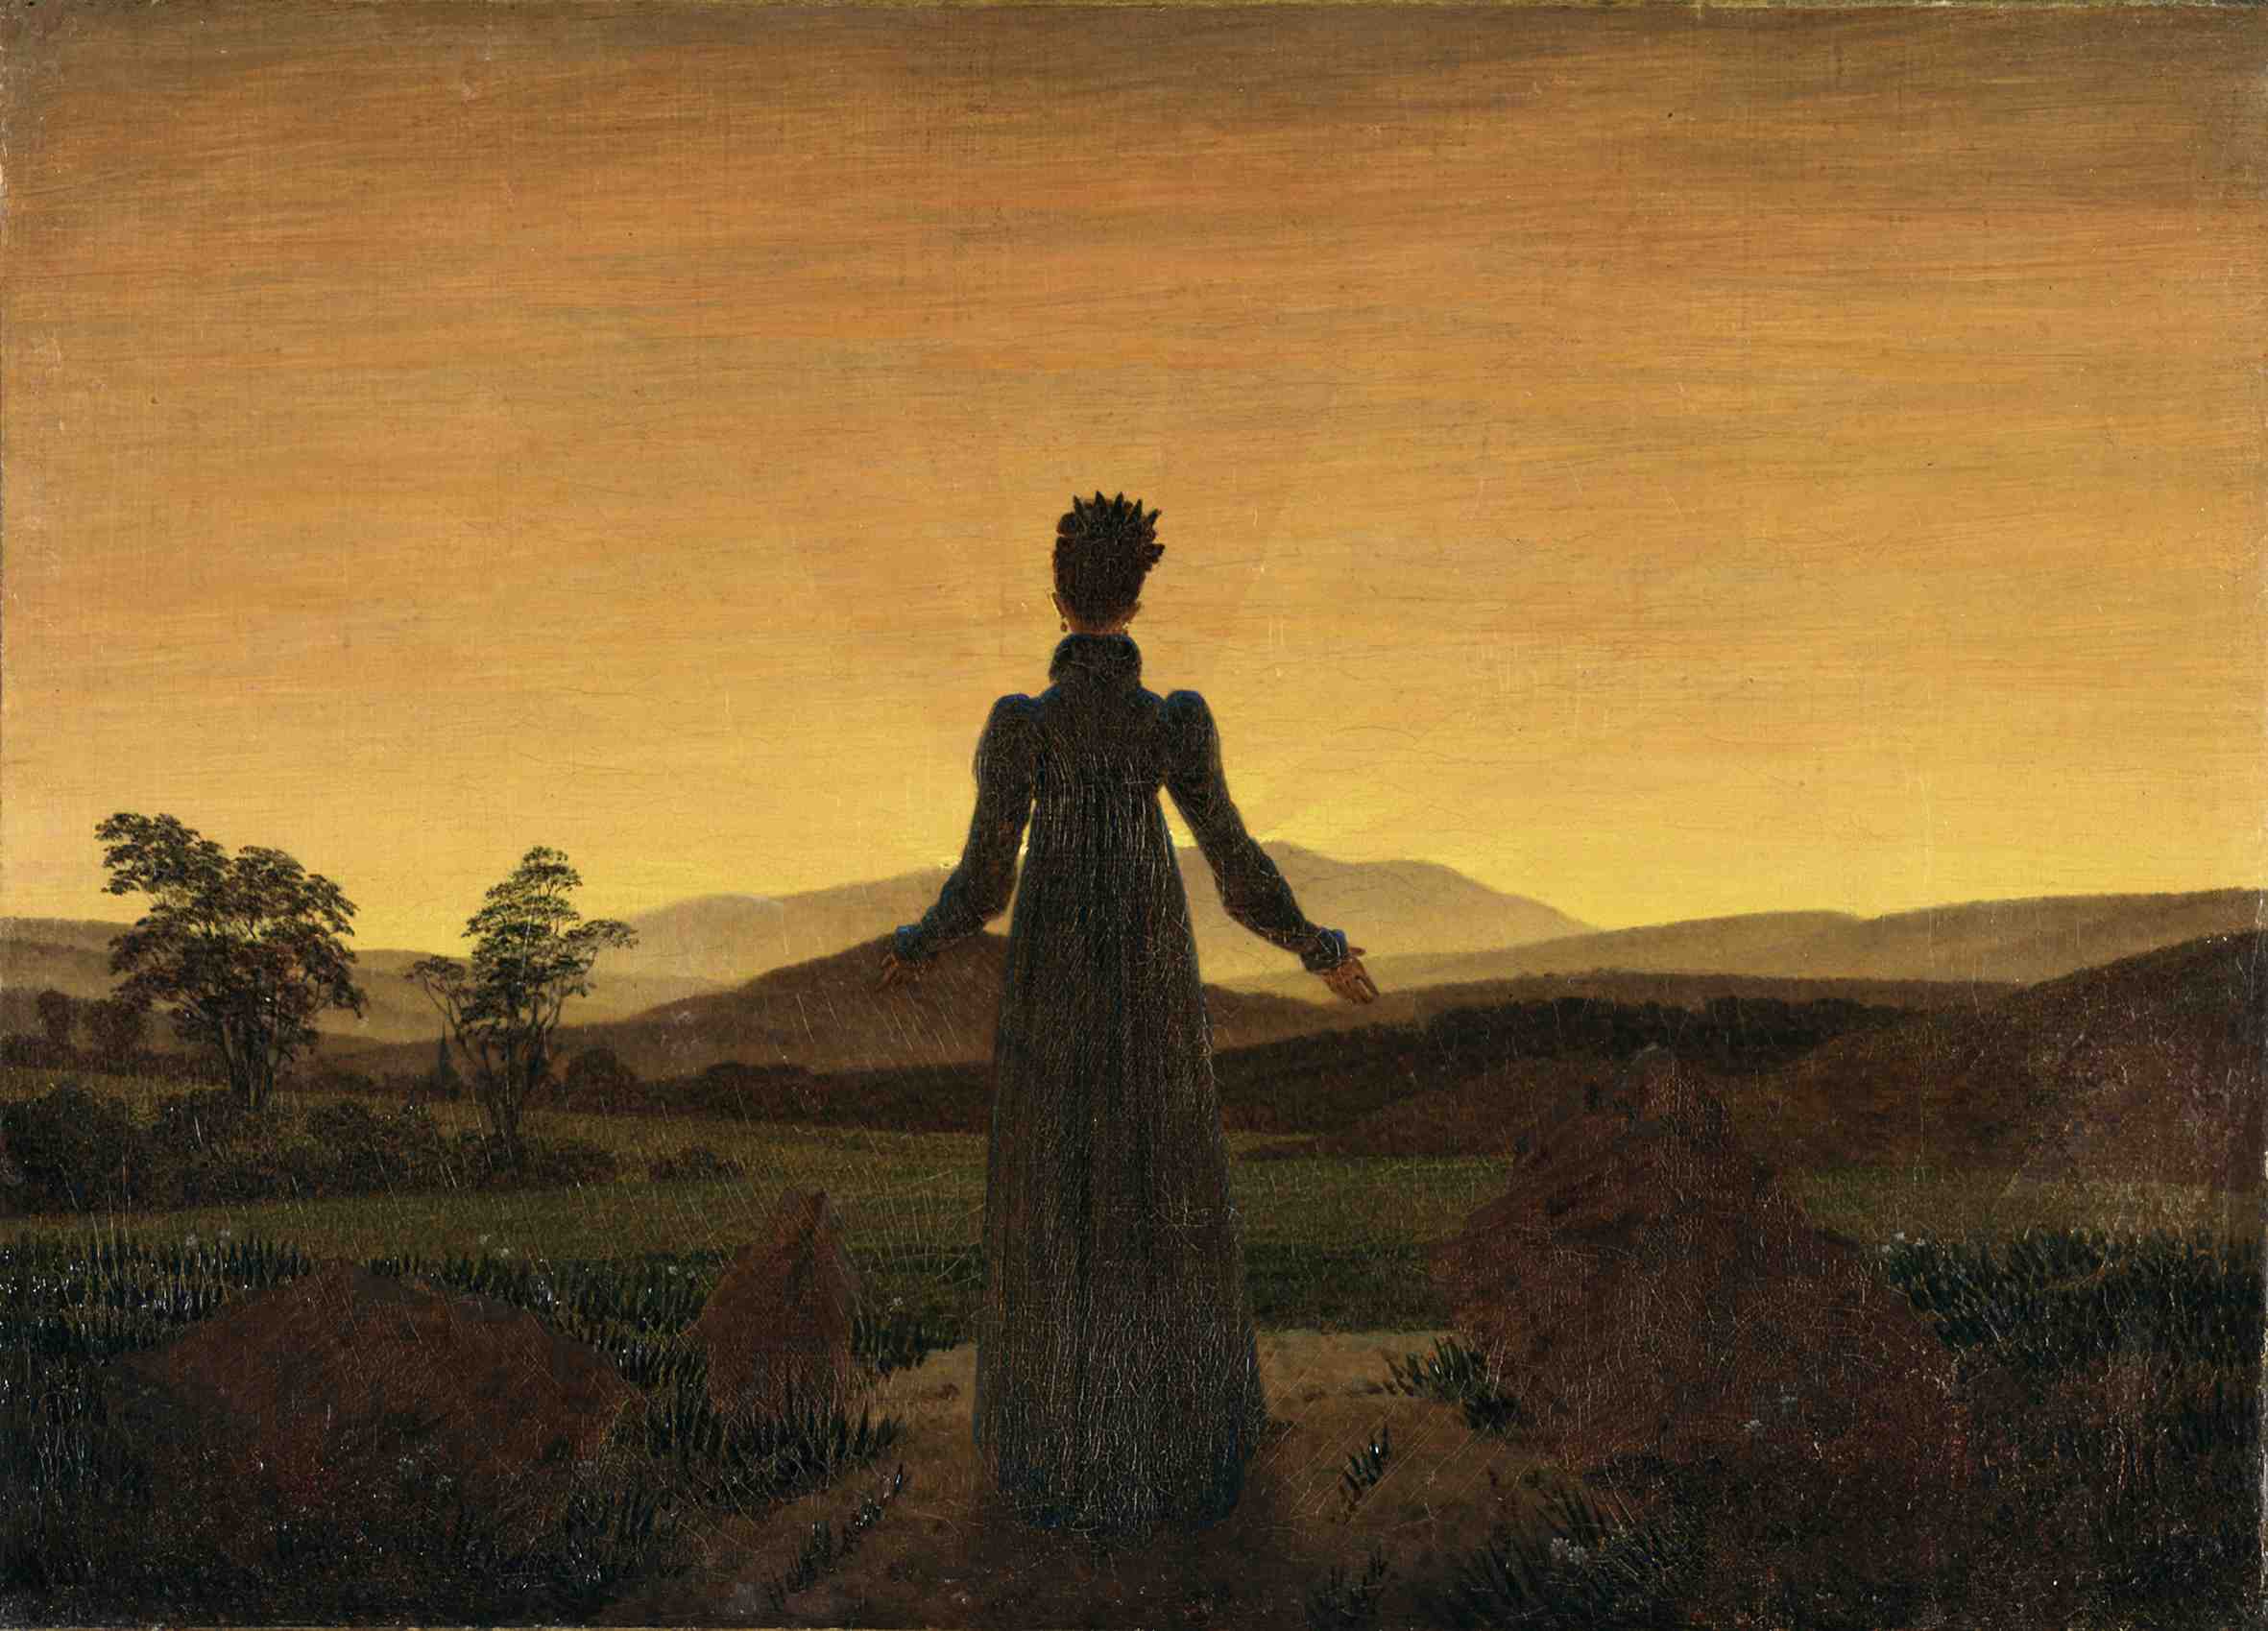 Vrouw voor de zonsopkomst  by Caspar Friedrich - c. 1818 - 22 × 30 cm Museum Folkwang